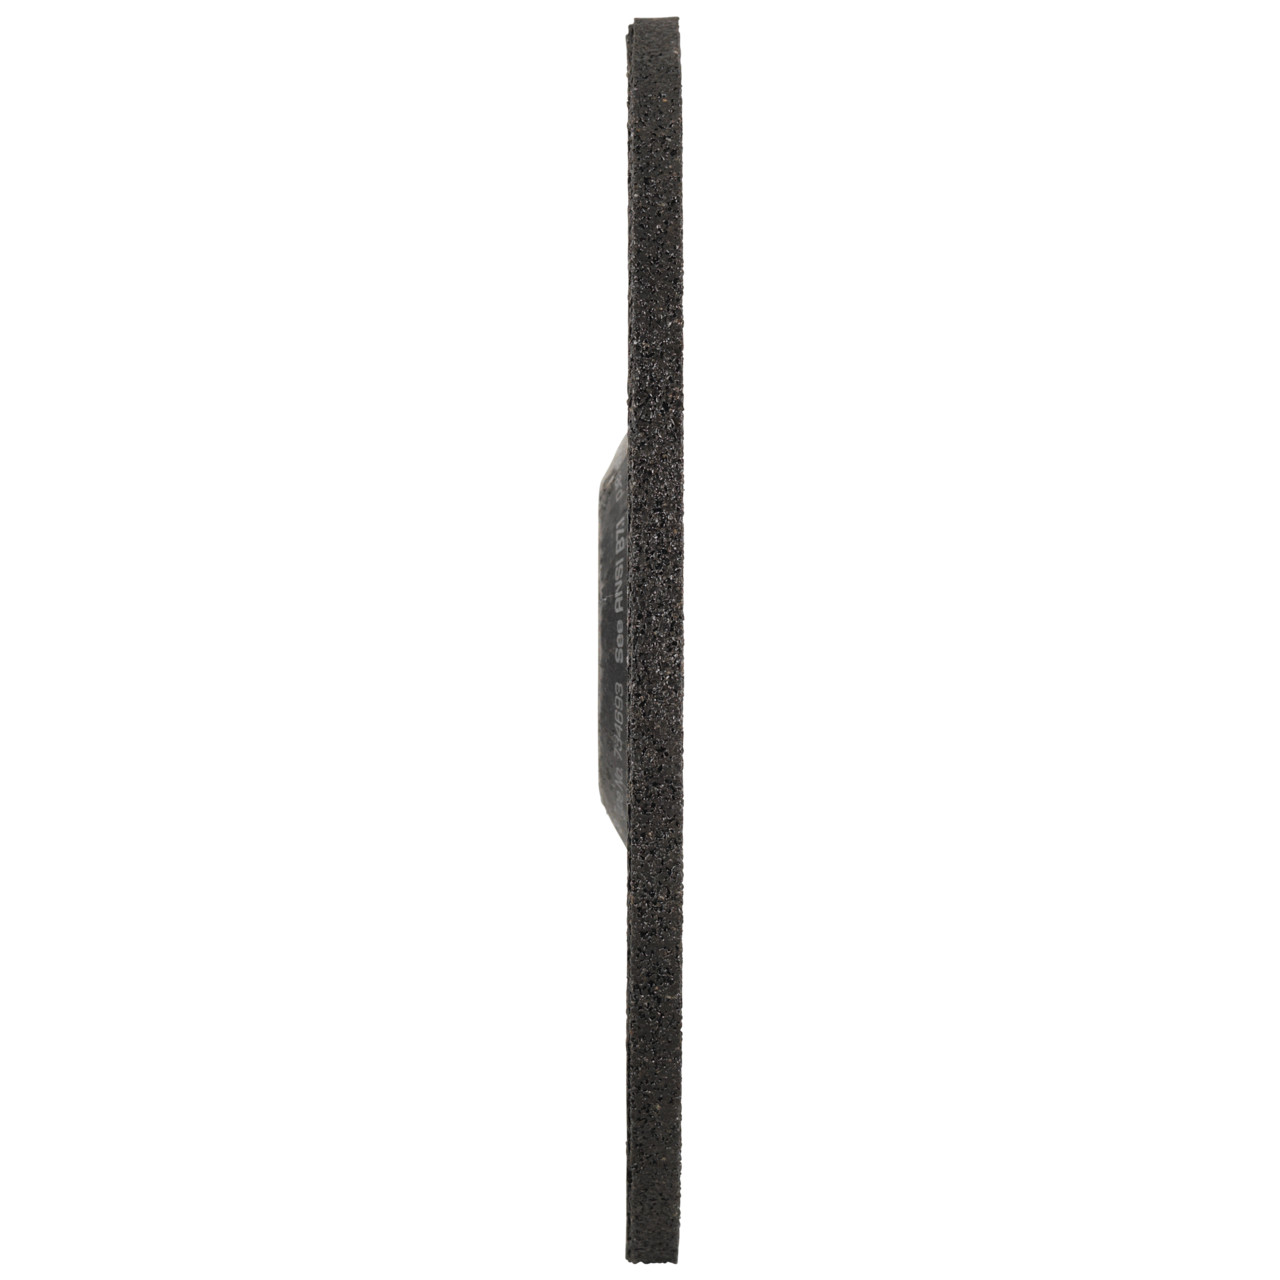 Tyrolit Voorslijpschijf DxUxH 178x7x22,23 PIPELINER 2in1 voor staal en roestvast staal, vorm: 27 - offset uitvoering, Art. 734693